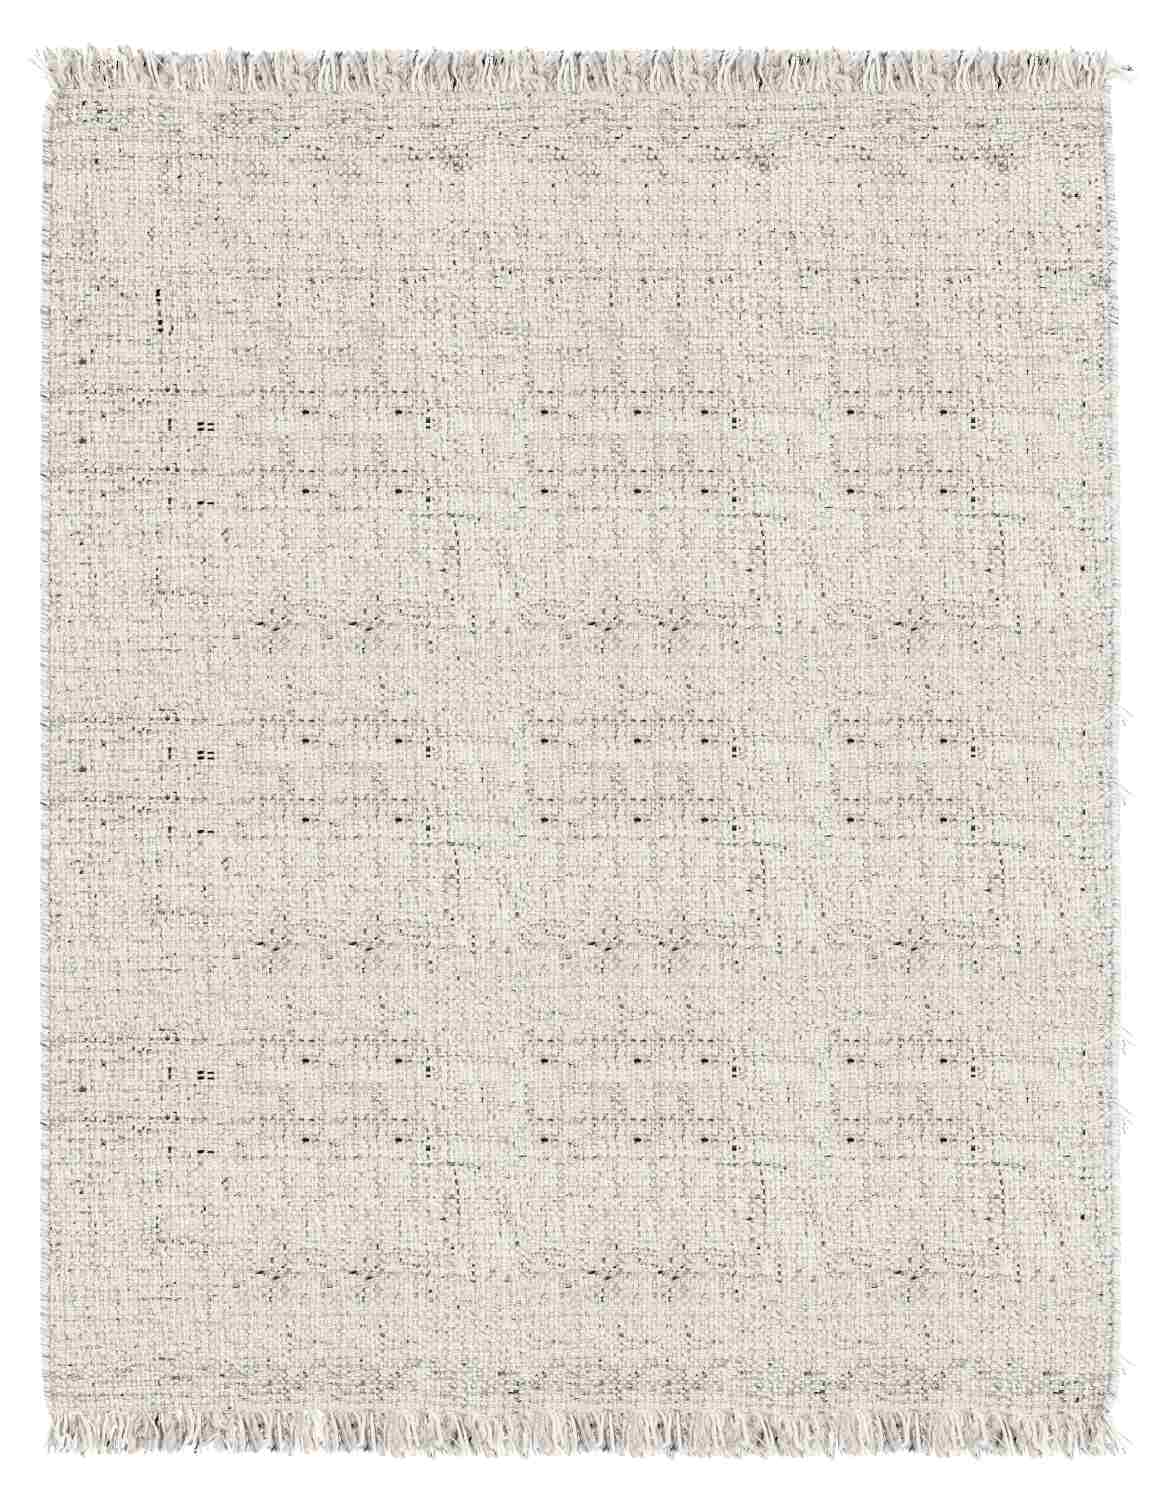 Der Teppich Senuri überzeugt mit seinem klassischen Design. Gefertigt wurde die Vorderseite aus 70% Polyester und 30% Wolle, die Rückseite ist aus Baumwolle. Der Teppich besitzt eine Beige Farbton und die Maße von 200x300 cm.